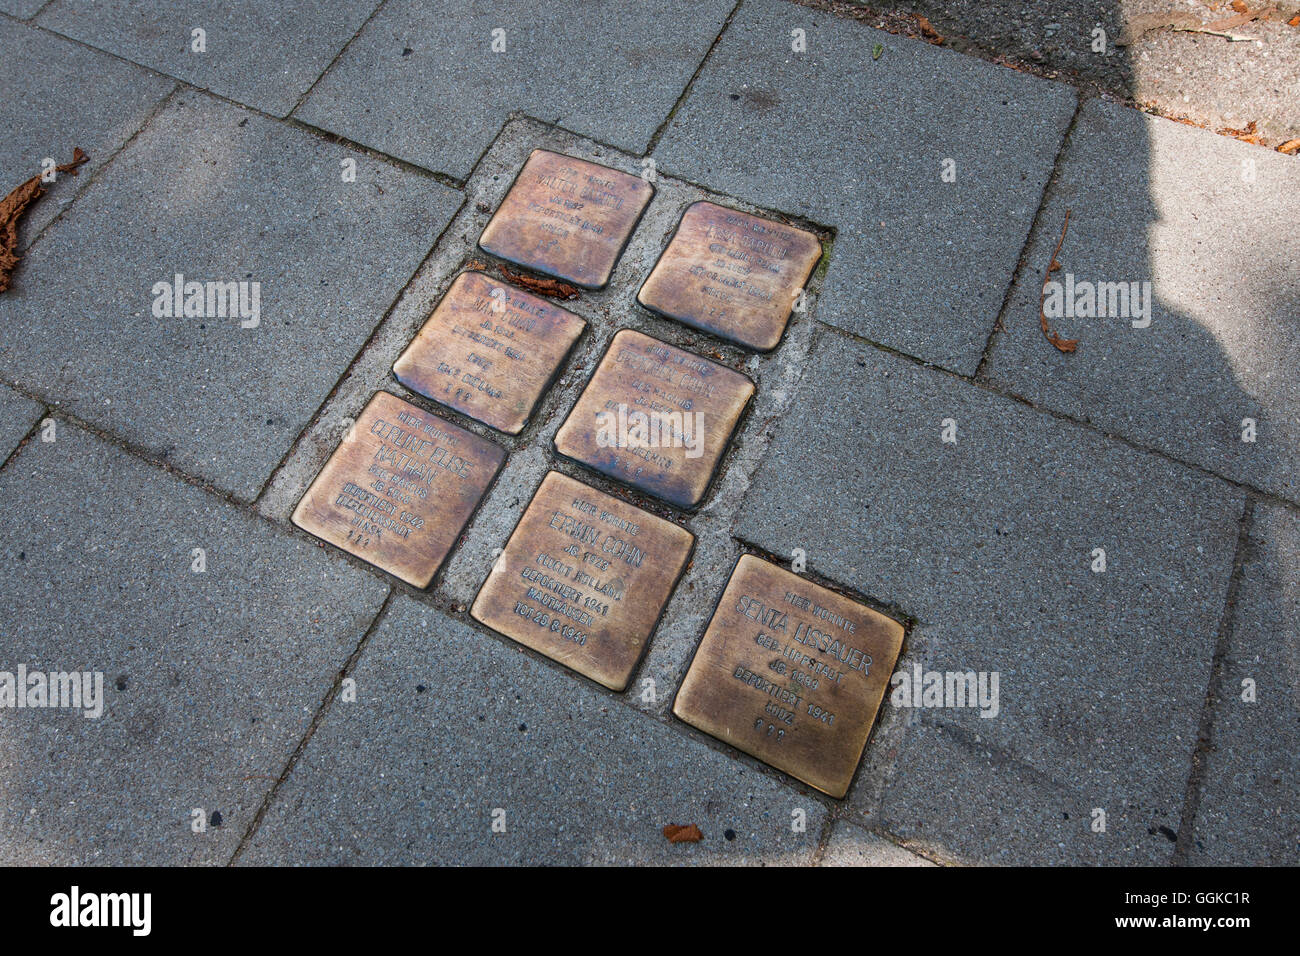 Stolpersteine (stumbling blocks) in pavement, Hamburg, Germany Stock Photo